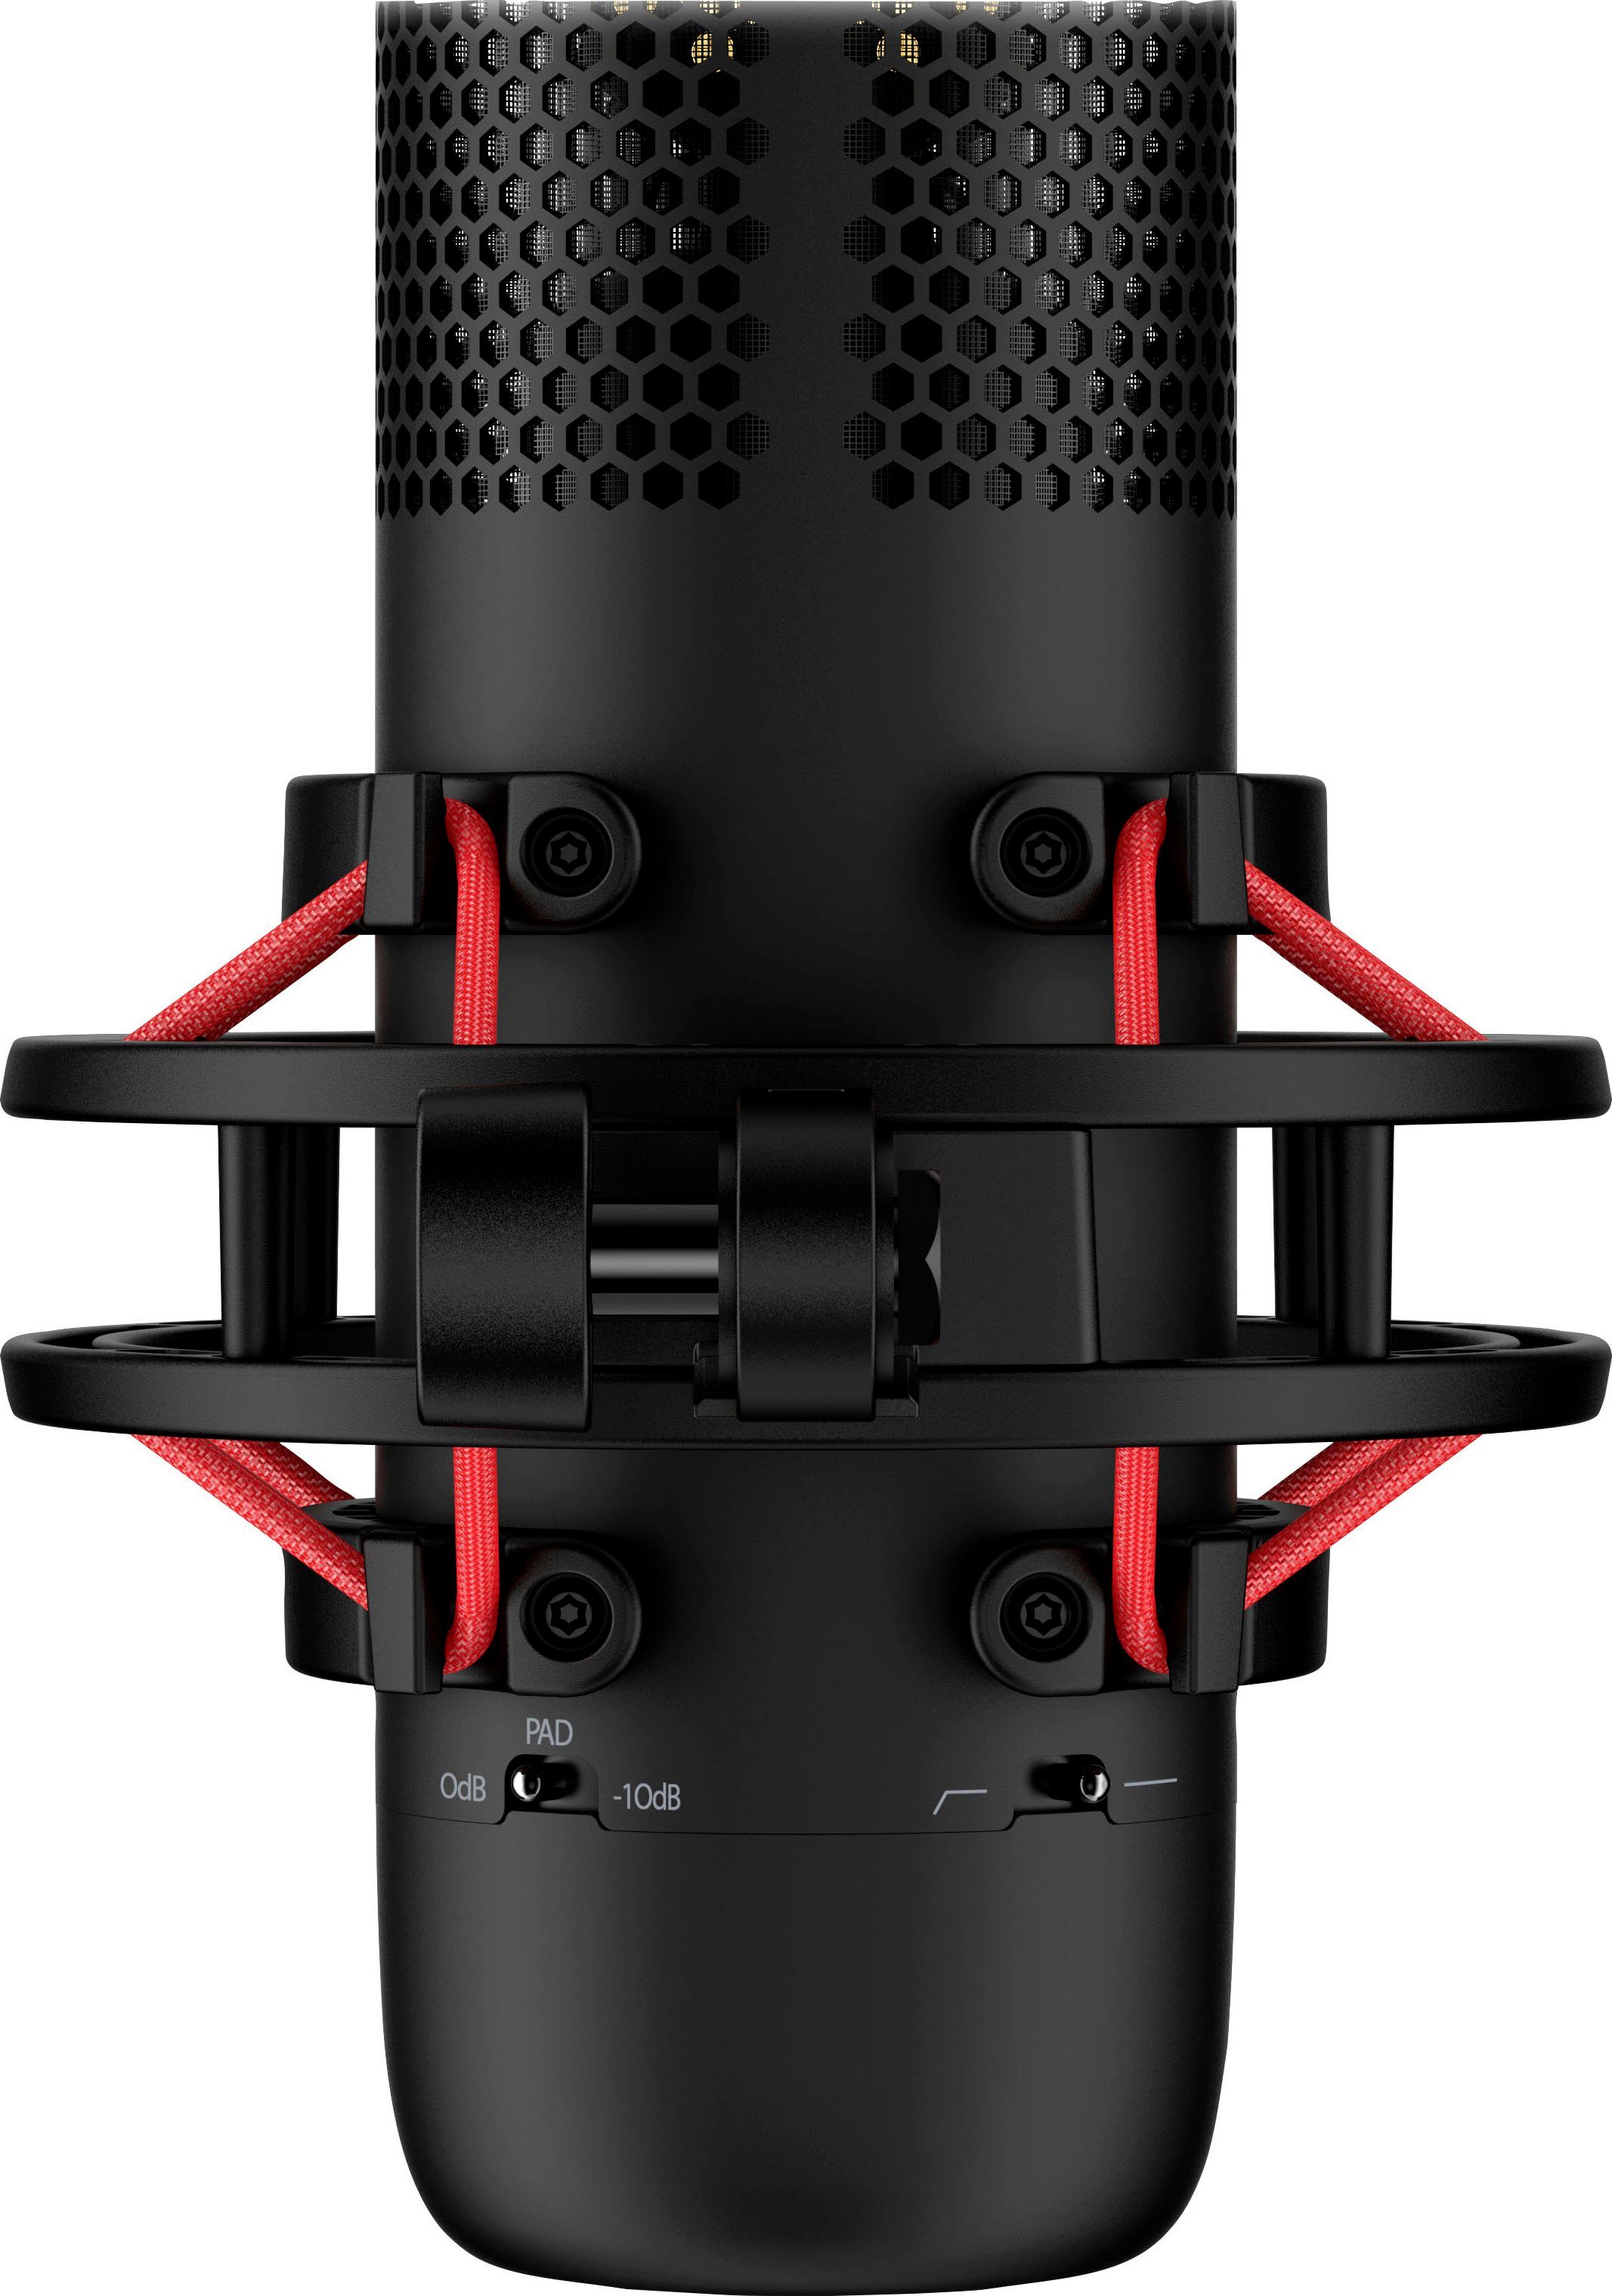 HyperX Mikrofon ProCast